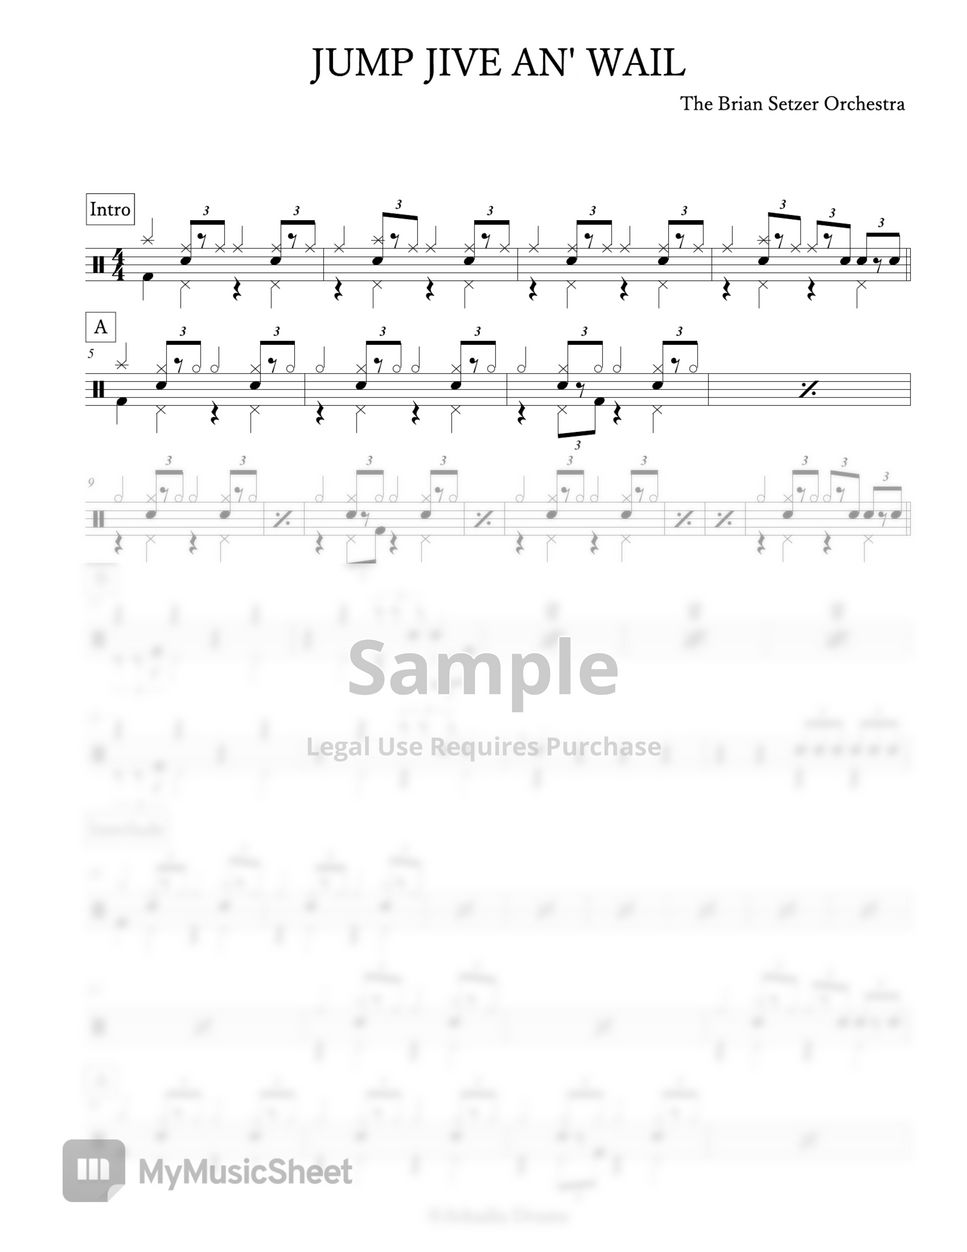 The Brian Setzer Orchestra - JUMP JIVE AN' WAIL Sheets by Arkadia Drums